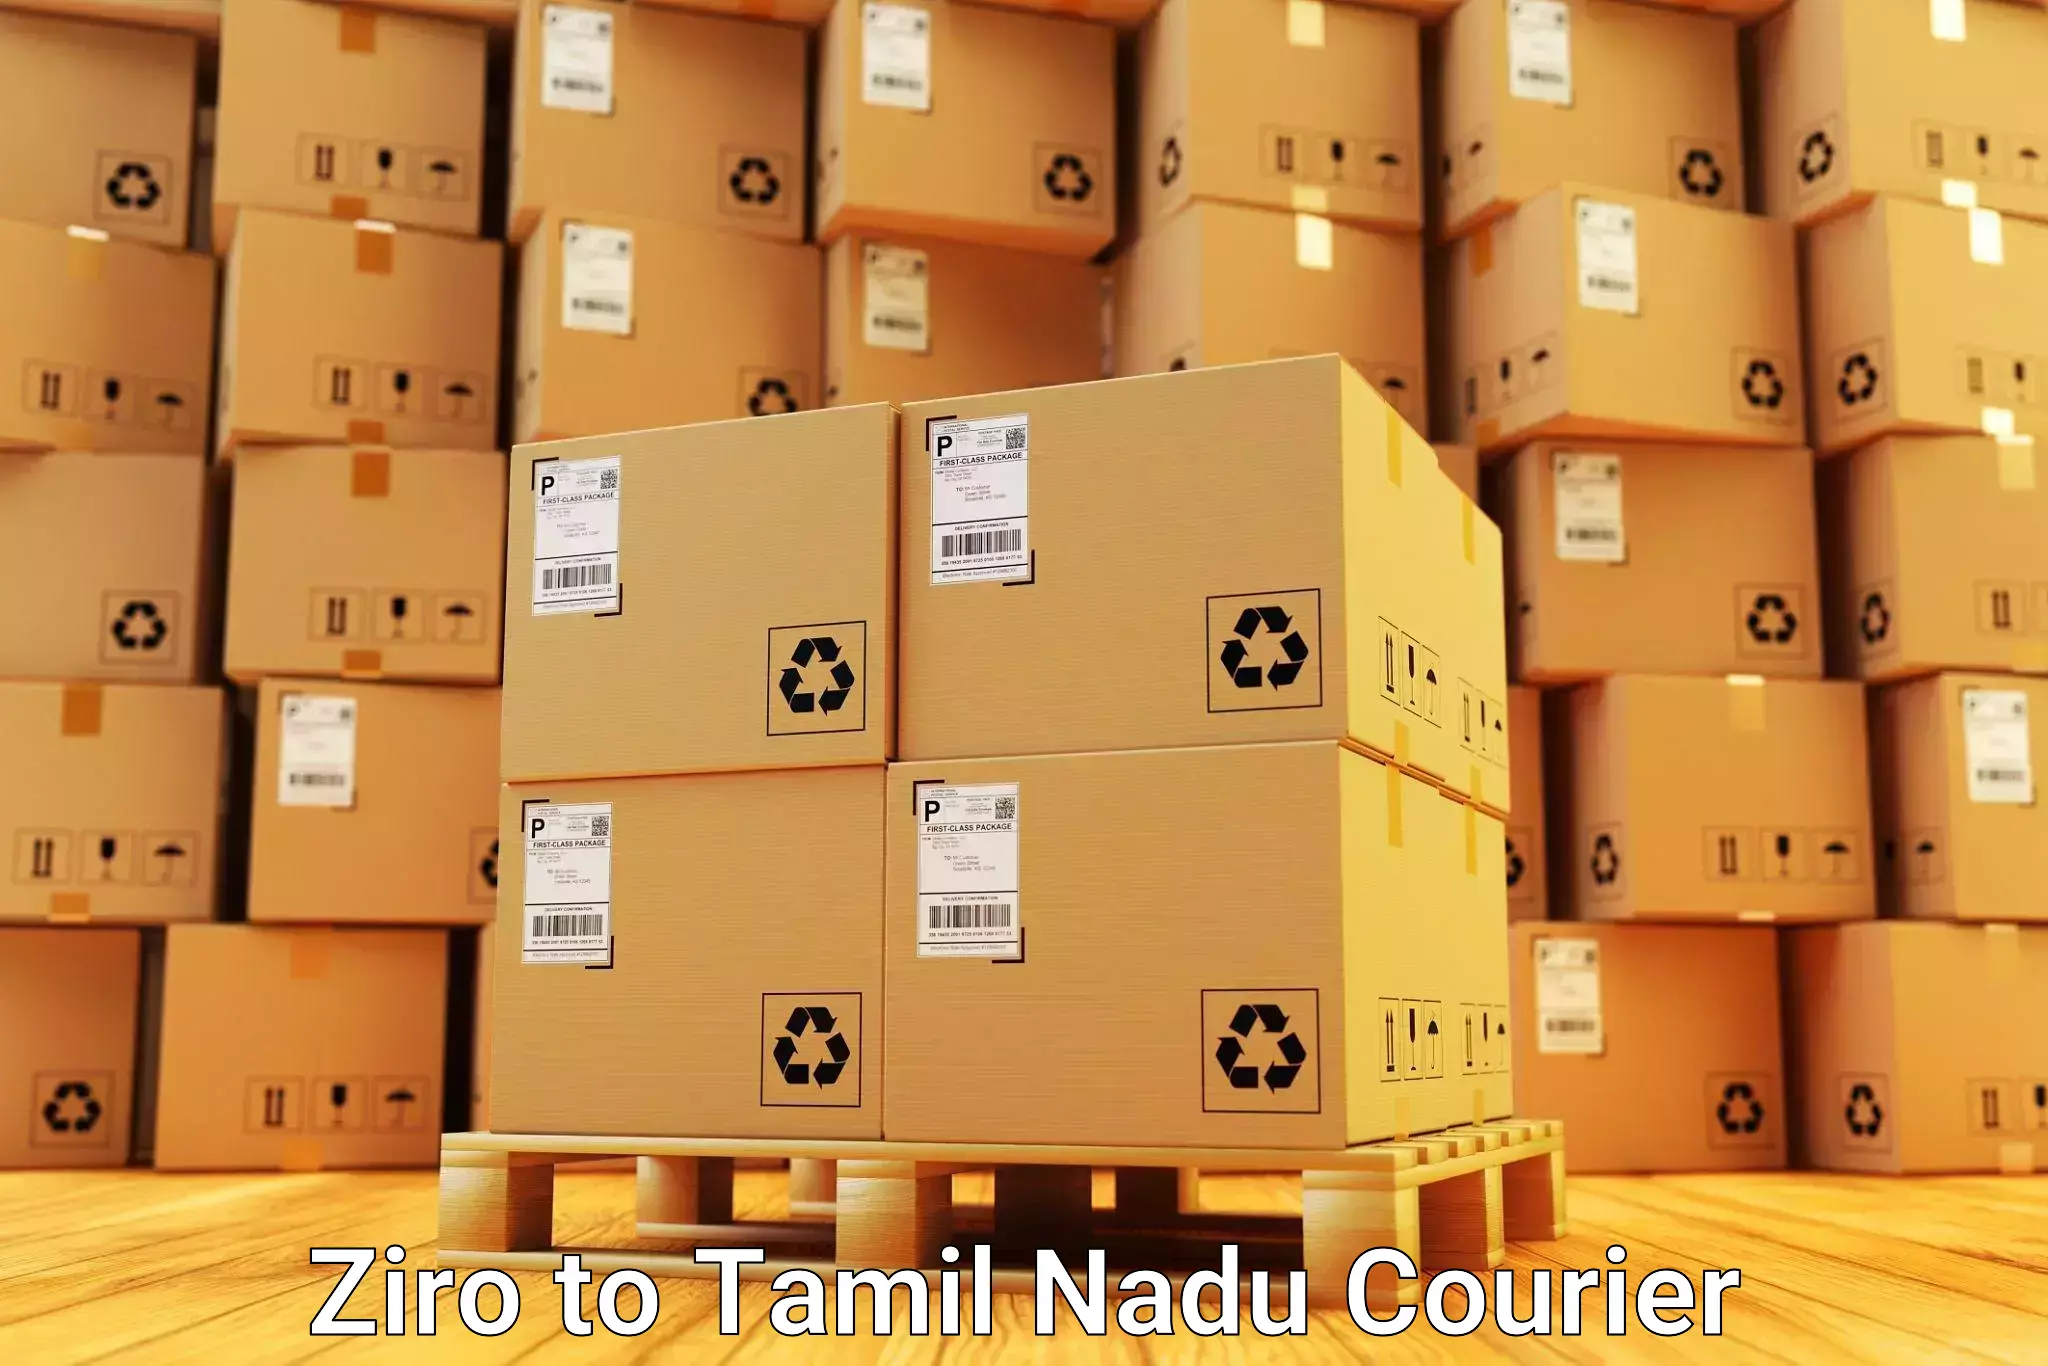 Furniture moving specialists Ziro to Rathinasabapathy Puram